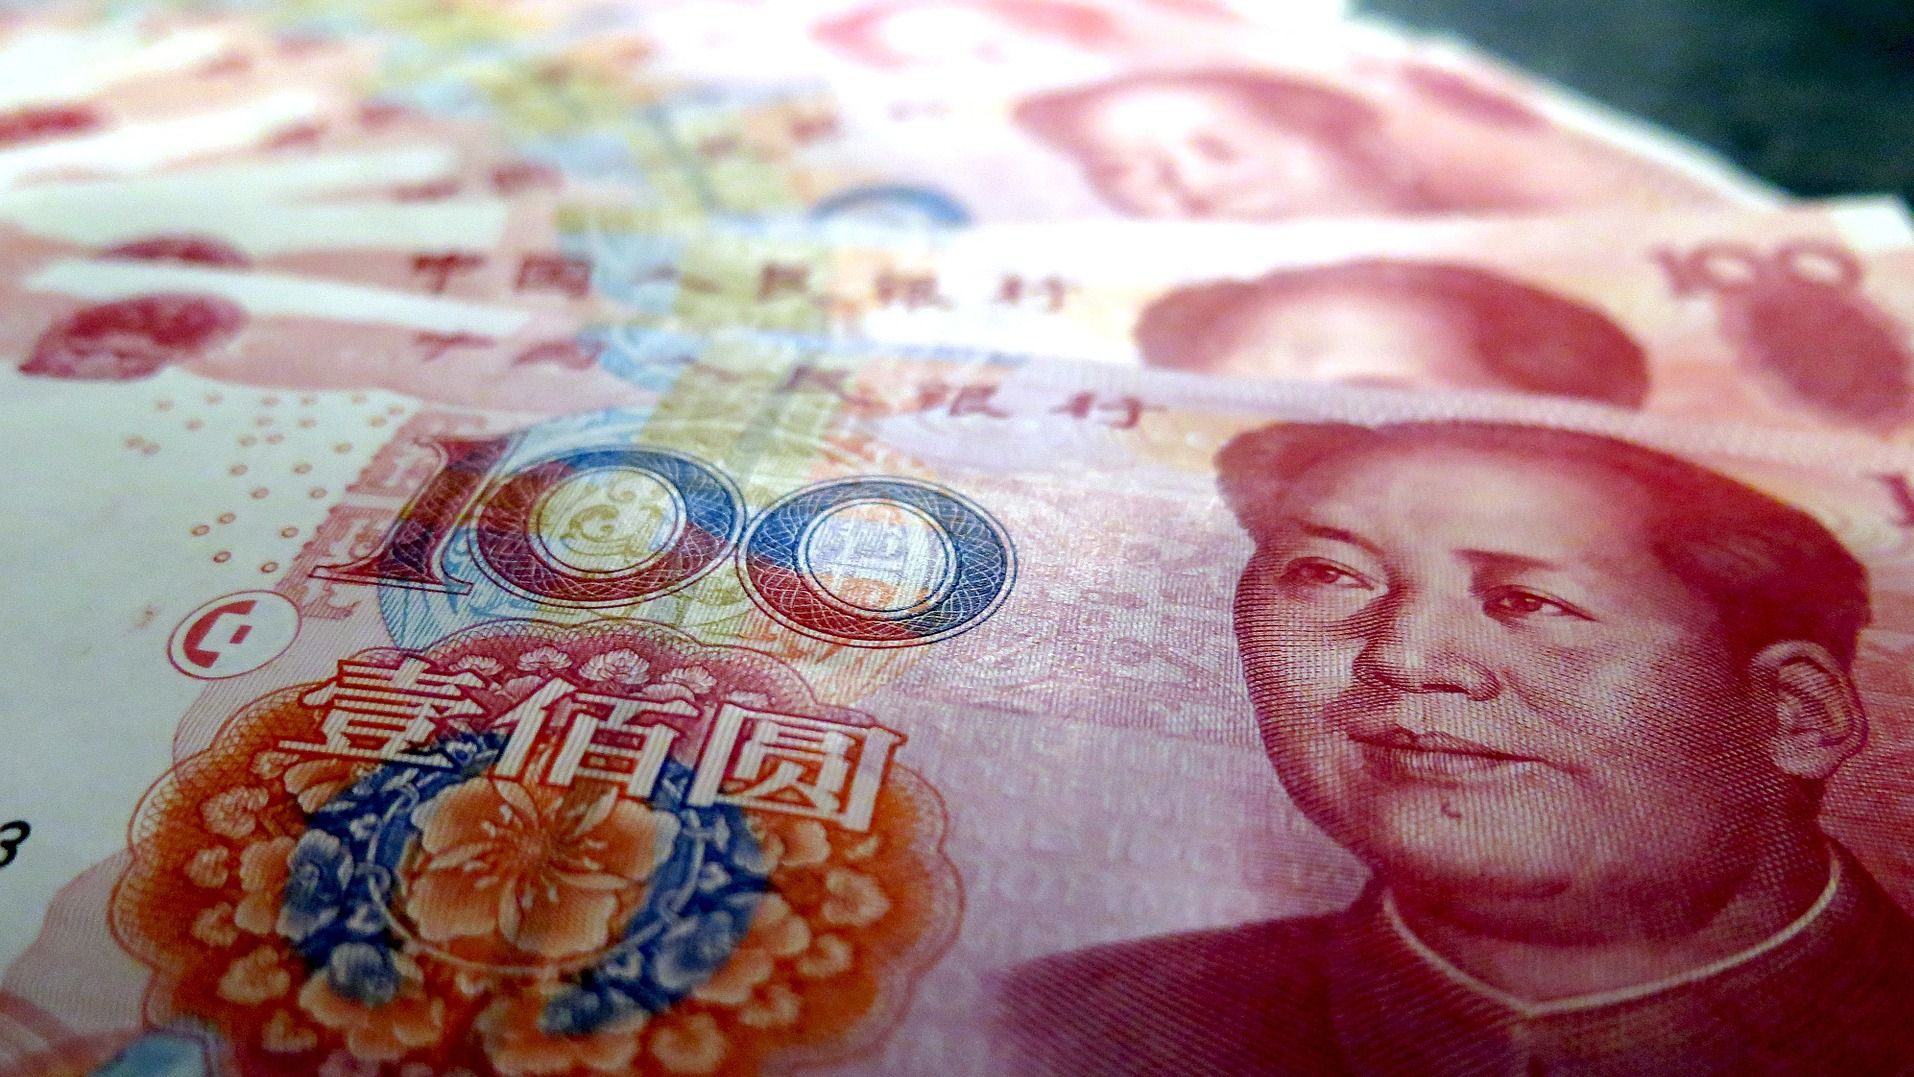 中国｢信用取引残高｣が約6年ぶり高水準の背景 2015年と構成比も変化しているが､課題もある | 「財新」中国Biz＆Tech | 東洋経済オンライン